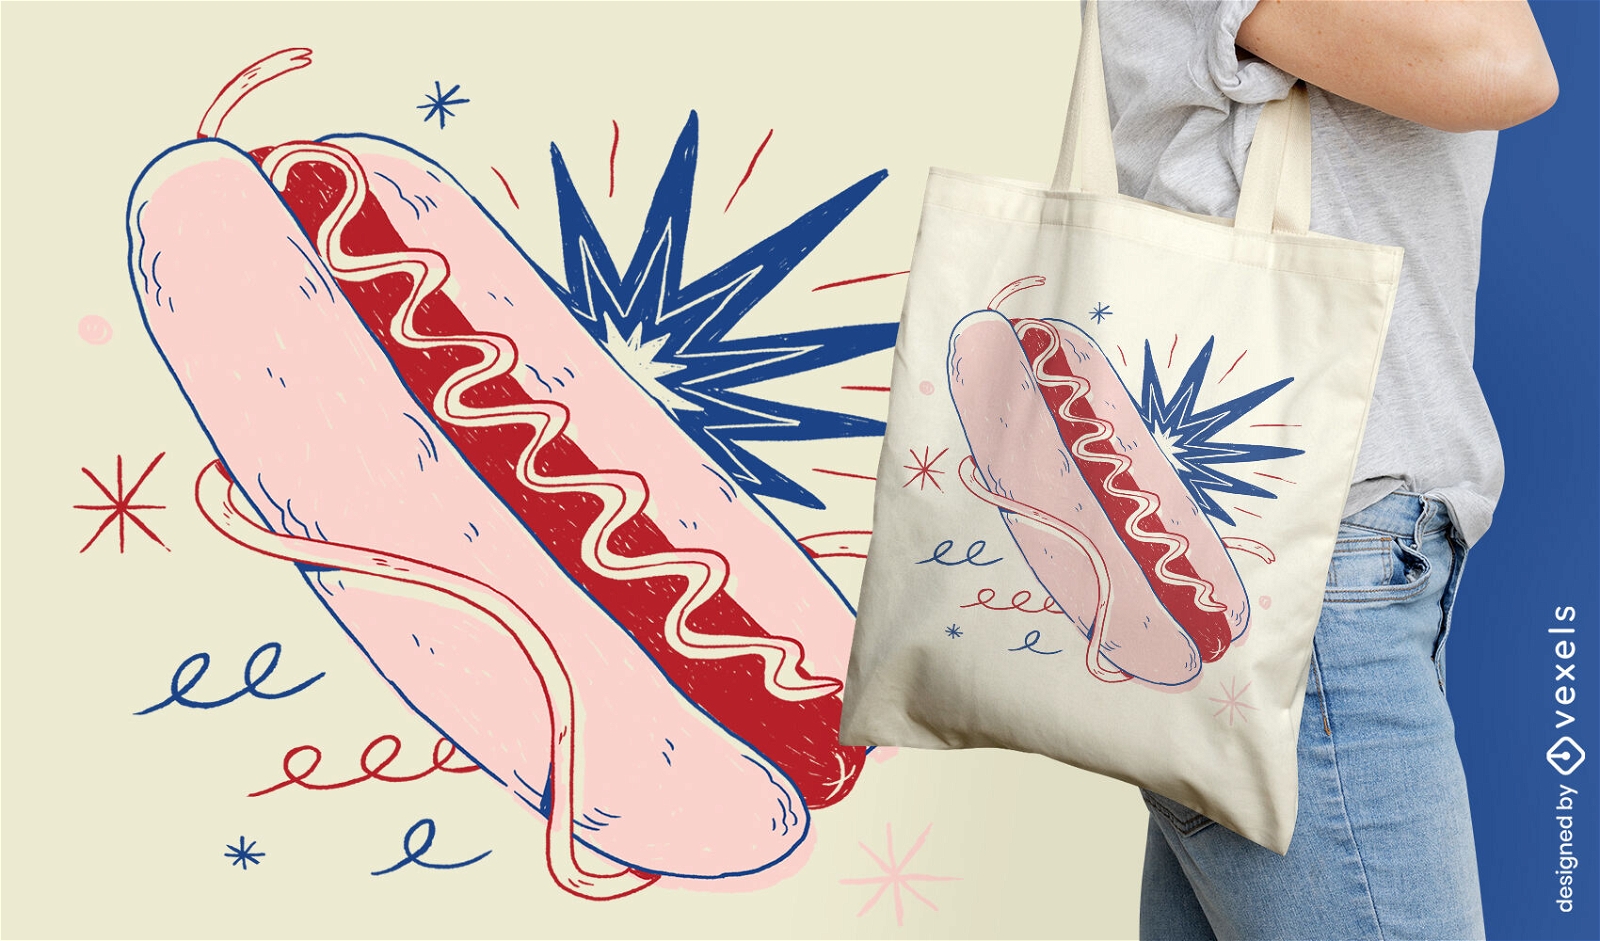 Hot-Dog-Doodle-Lebensmittel-Einkaufstaschen-Design